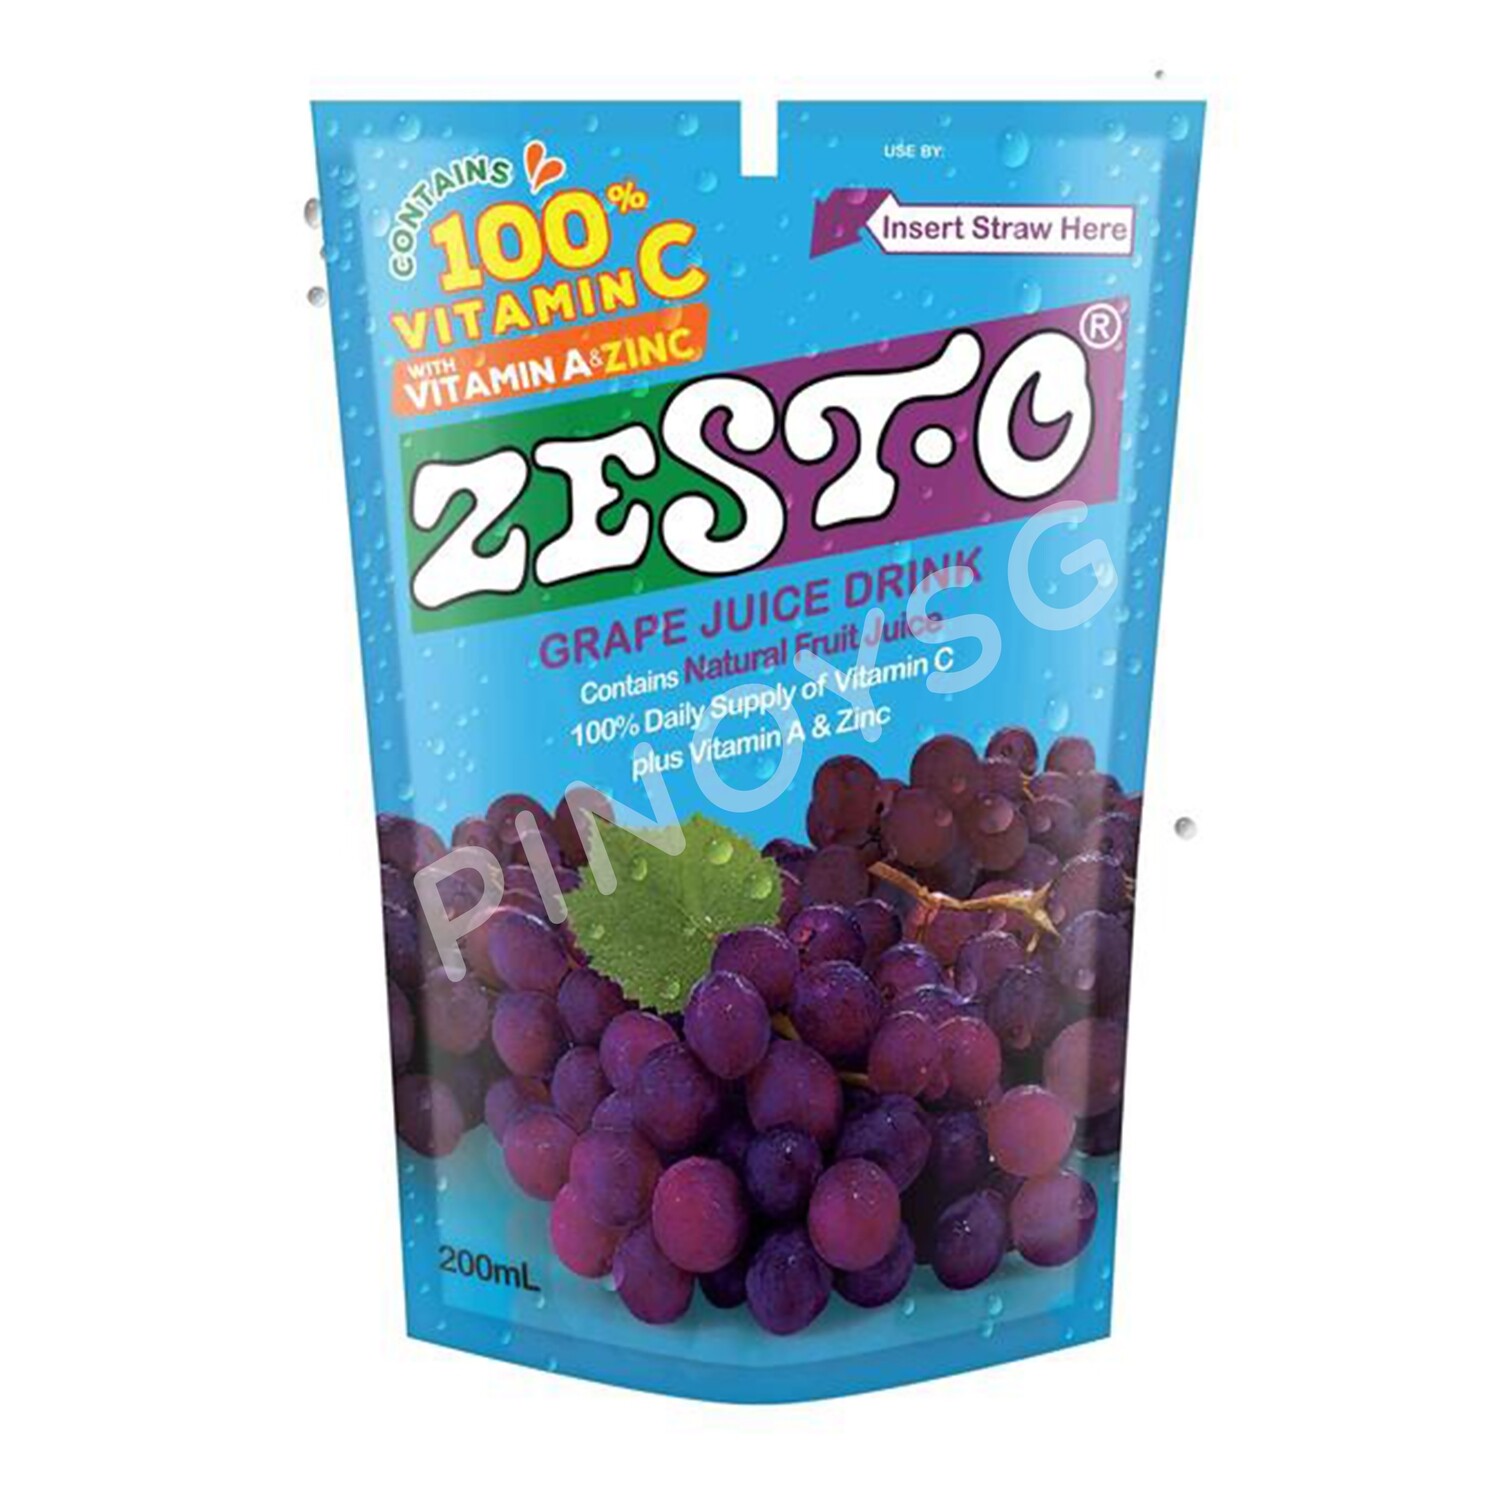 Zesto Grape Juice